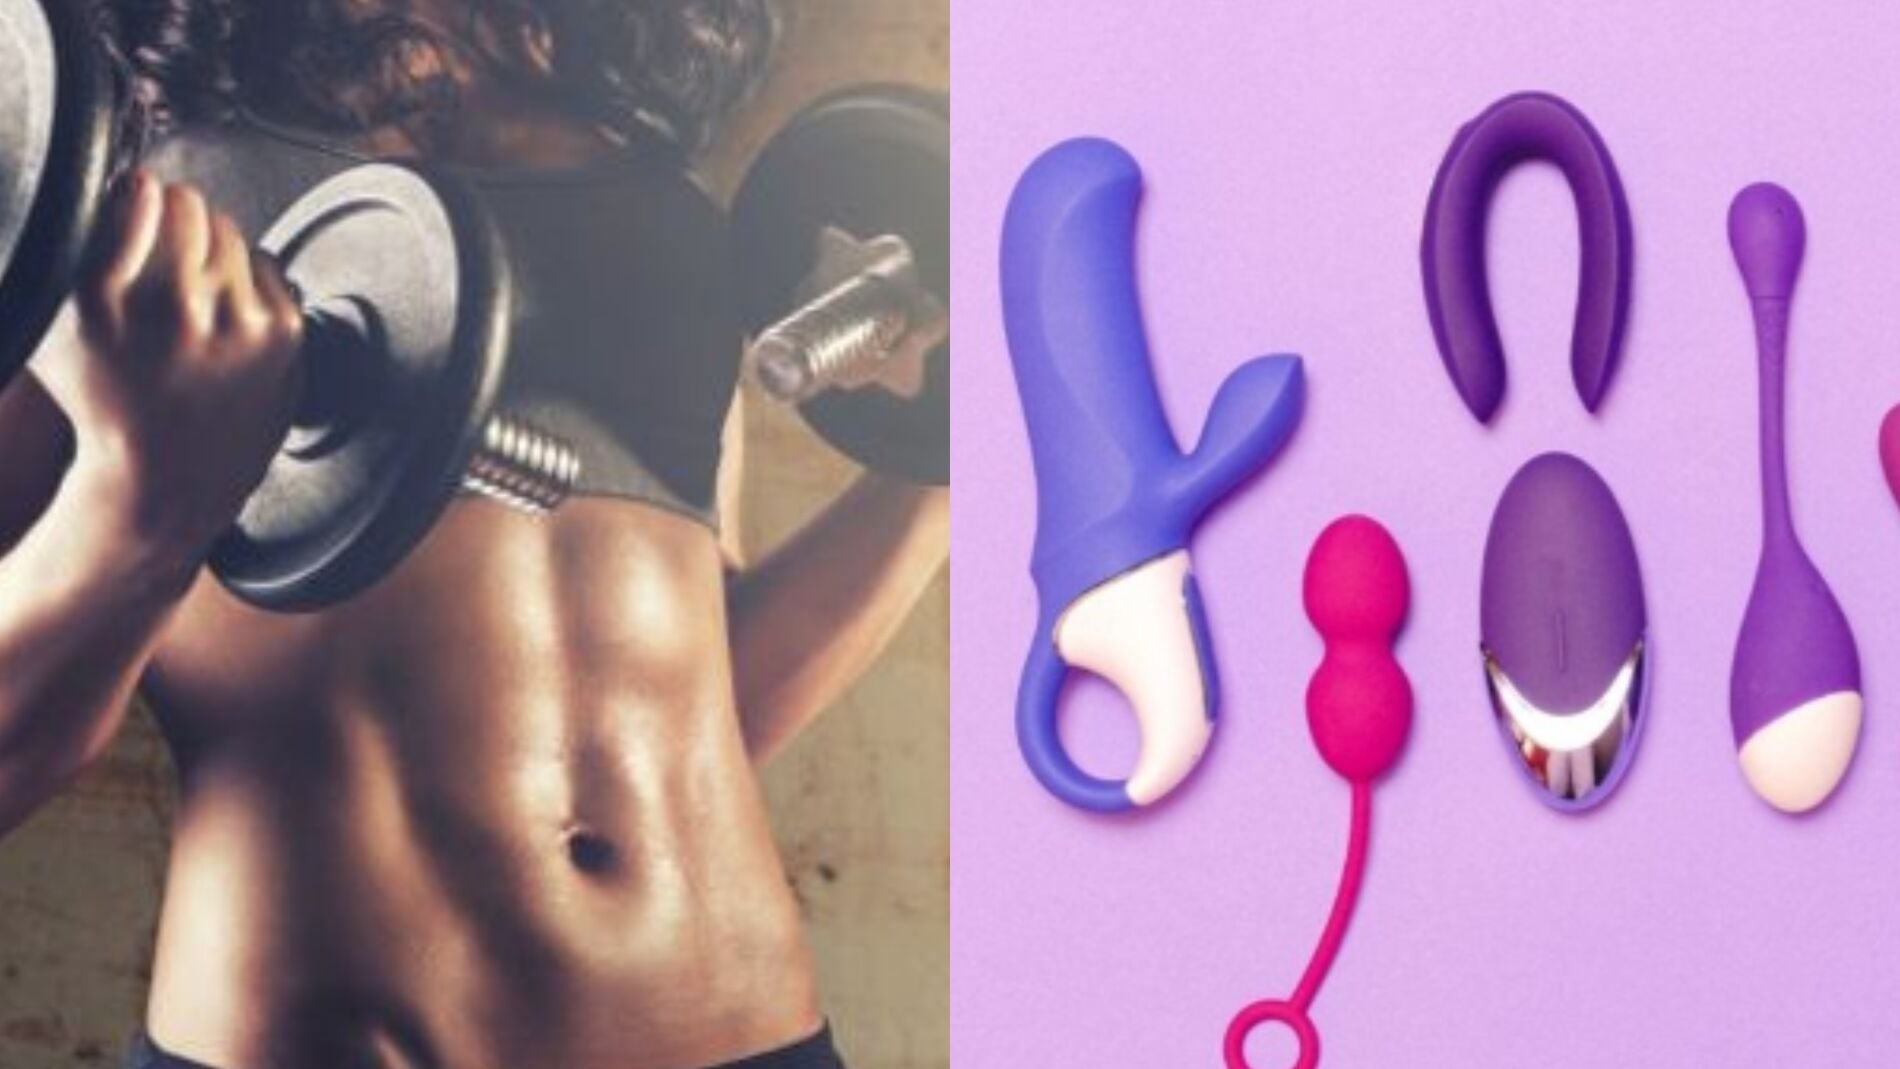 La razón por la que deberías usar juguetes sexuales para aumentar tu rendimiento deportivo, según la ciencia